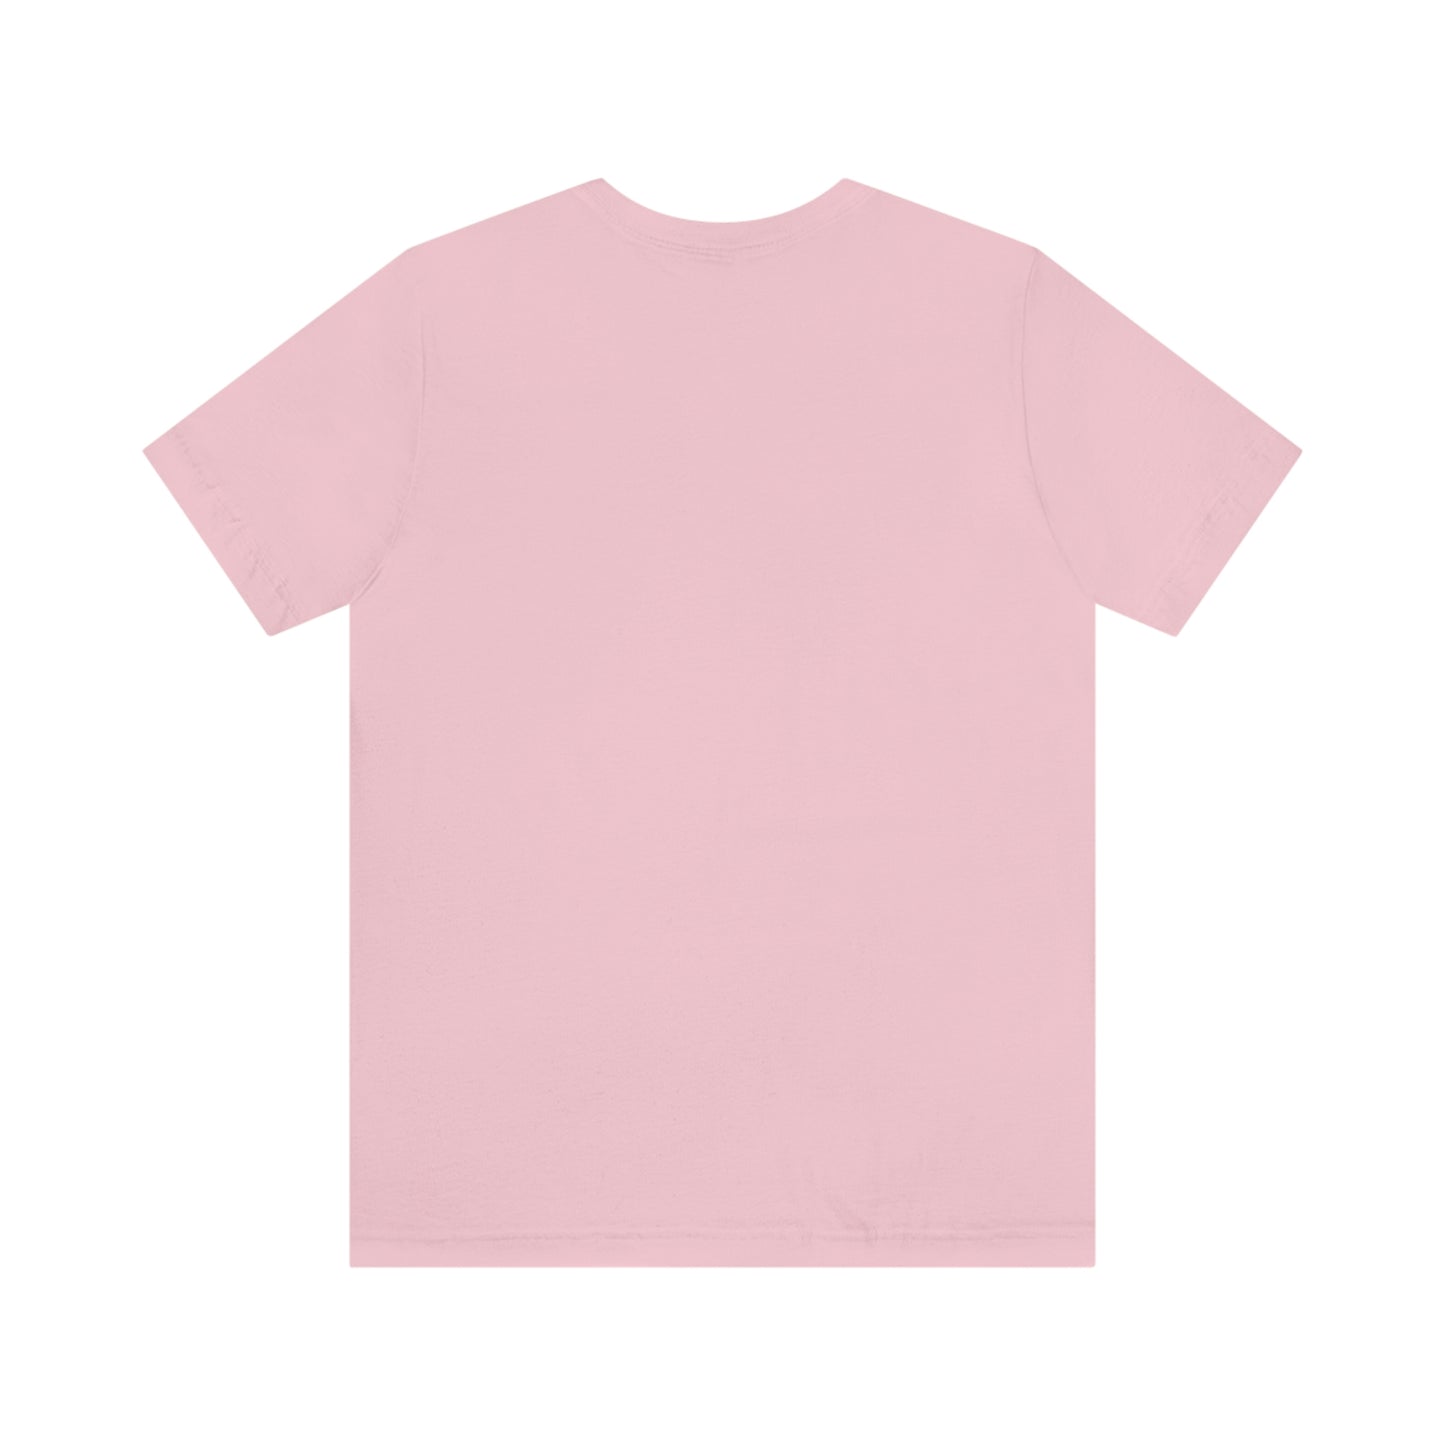 MAMA est 2023 shirt - new mom shirt - baby shower gift